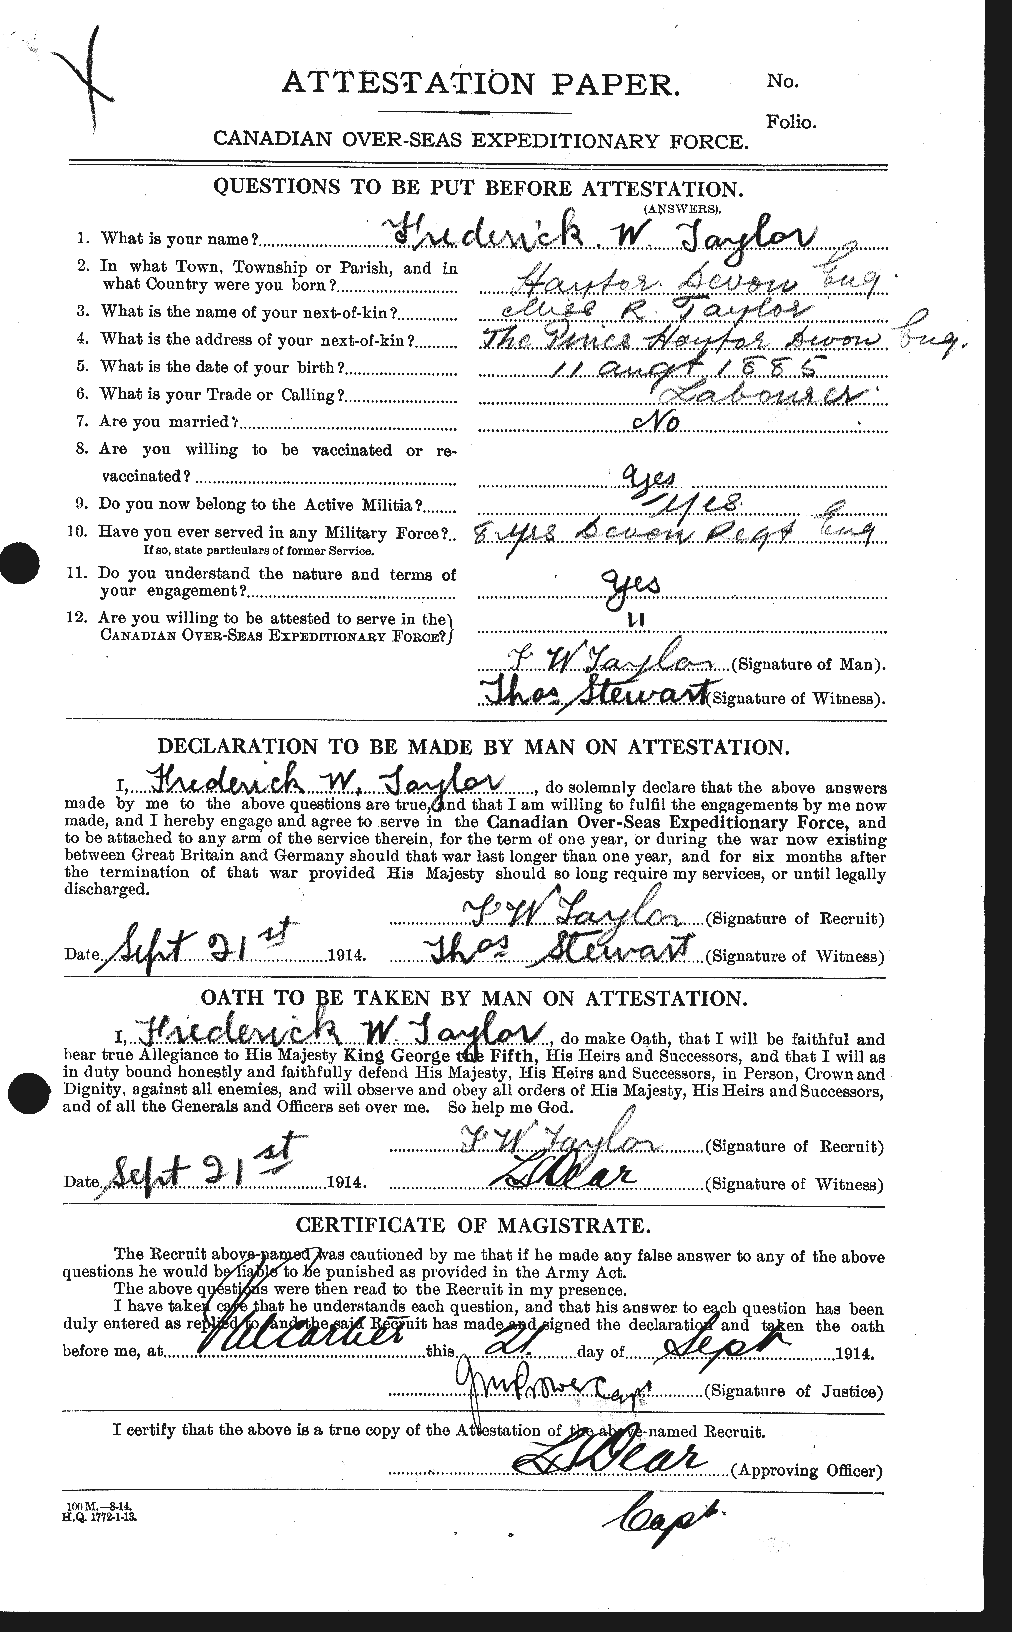 Dossiers du Personnel de la Première Guerre mondiale - CEC 625821a